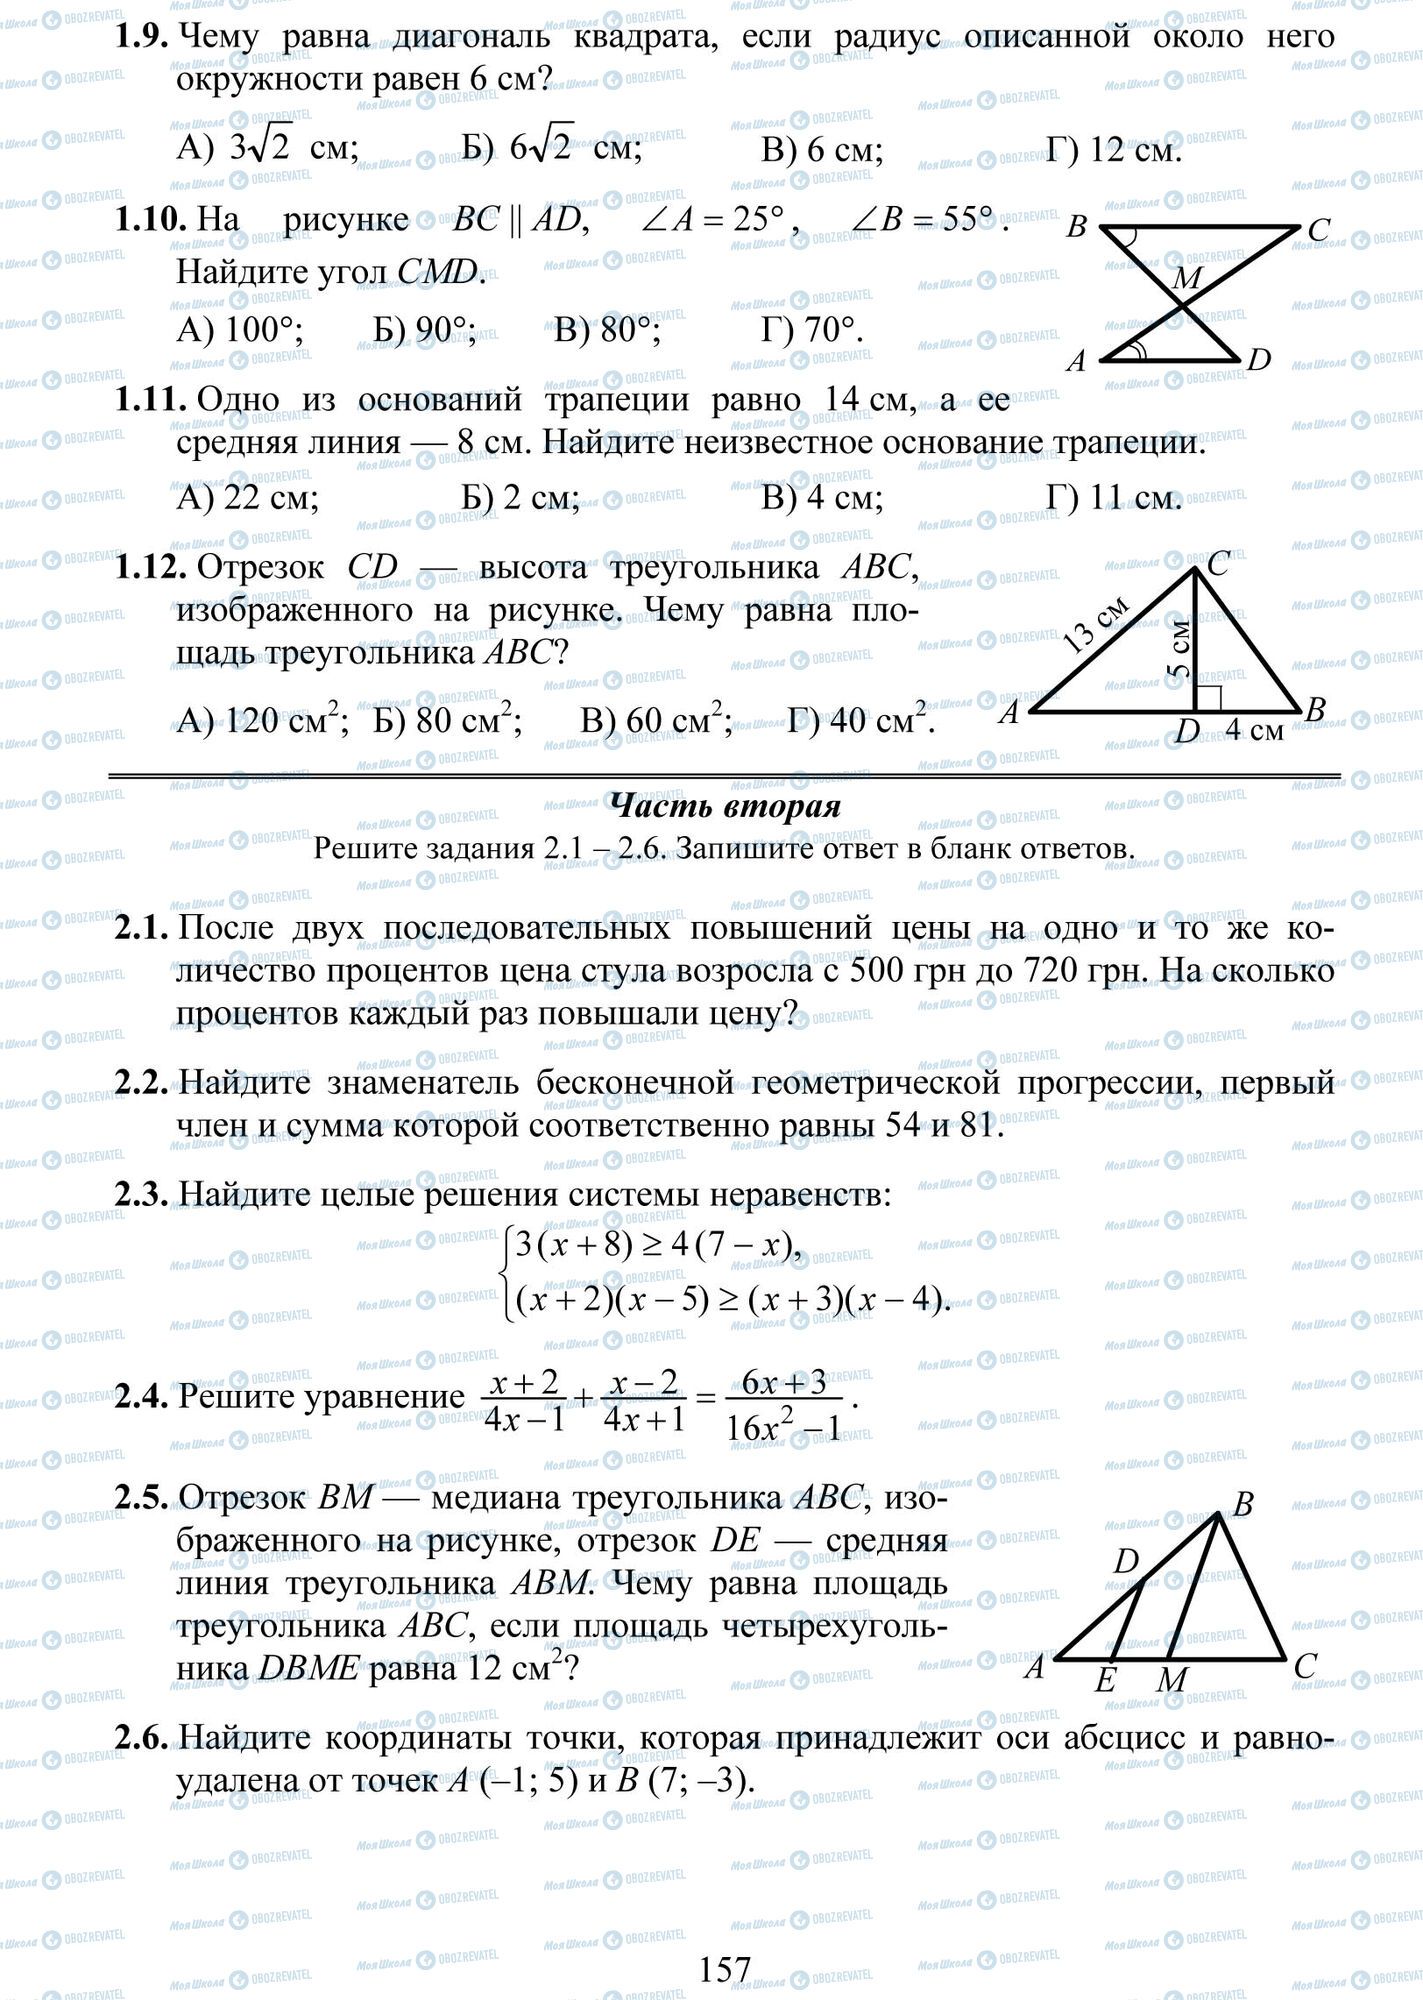 ДПА Математика 9 класс страница 9-6